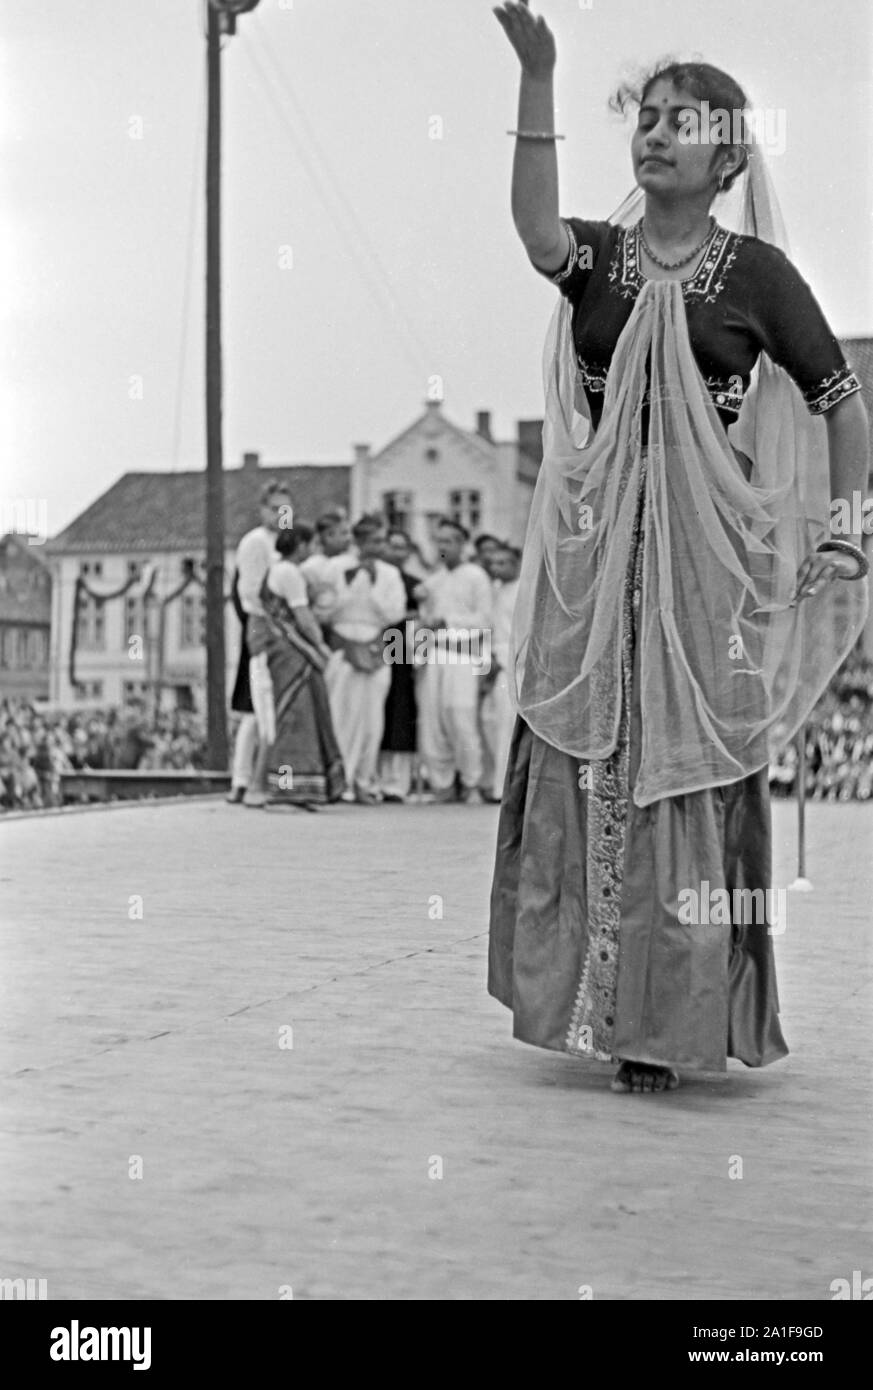 Orientalischer Volkstanz beim Volksfest, Schleswig-Holstein, Allemagne, années 1960 er Jahre. Danse folklorique oriental à la Volksfest, Schleswig-Holstein, Allemagne, 1960. Banque D'Images